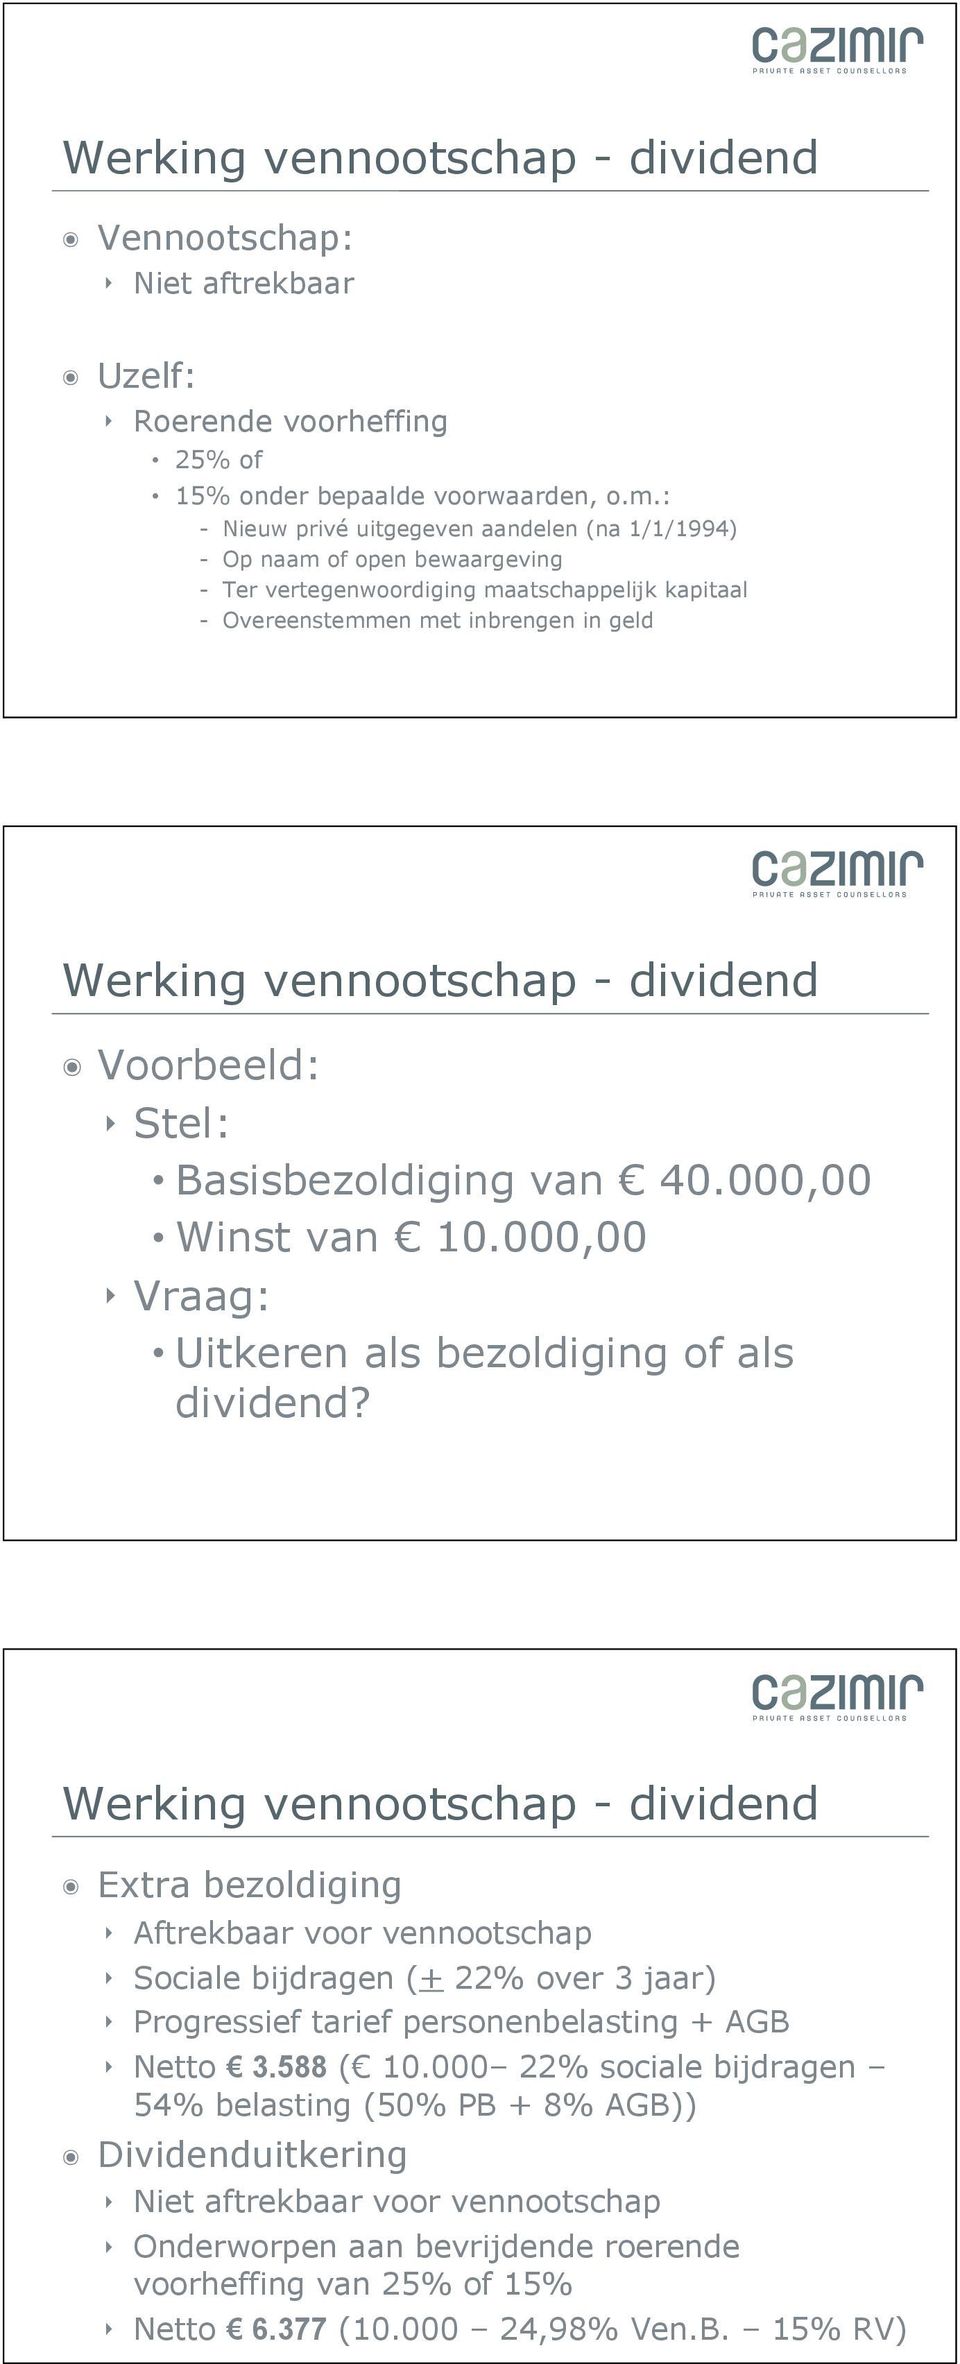 dividend Voorbeeld: Stel: Basisbezoldiging van 40.000,00 Winst van 10.000,00 Vraag: Uitkeren als bezoldiging of als dividend?